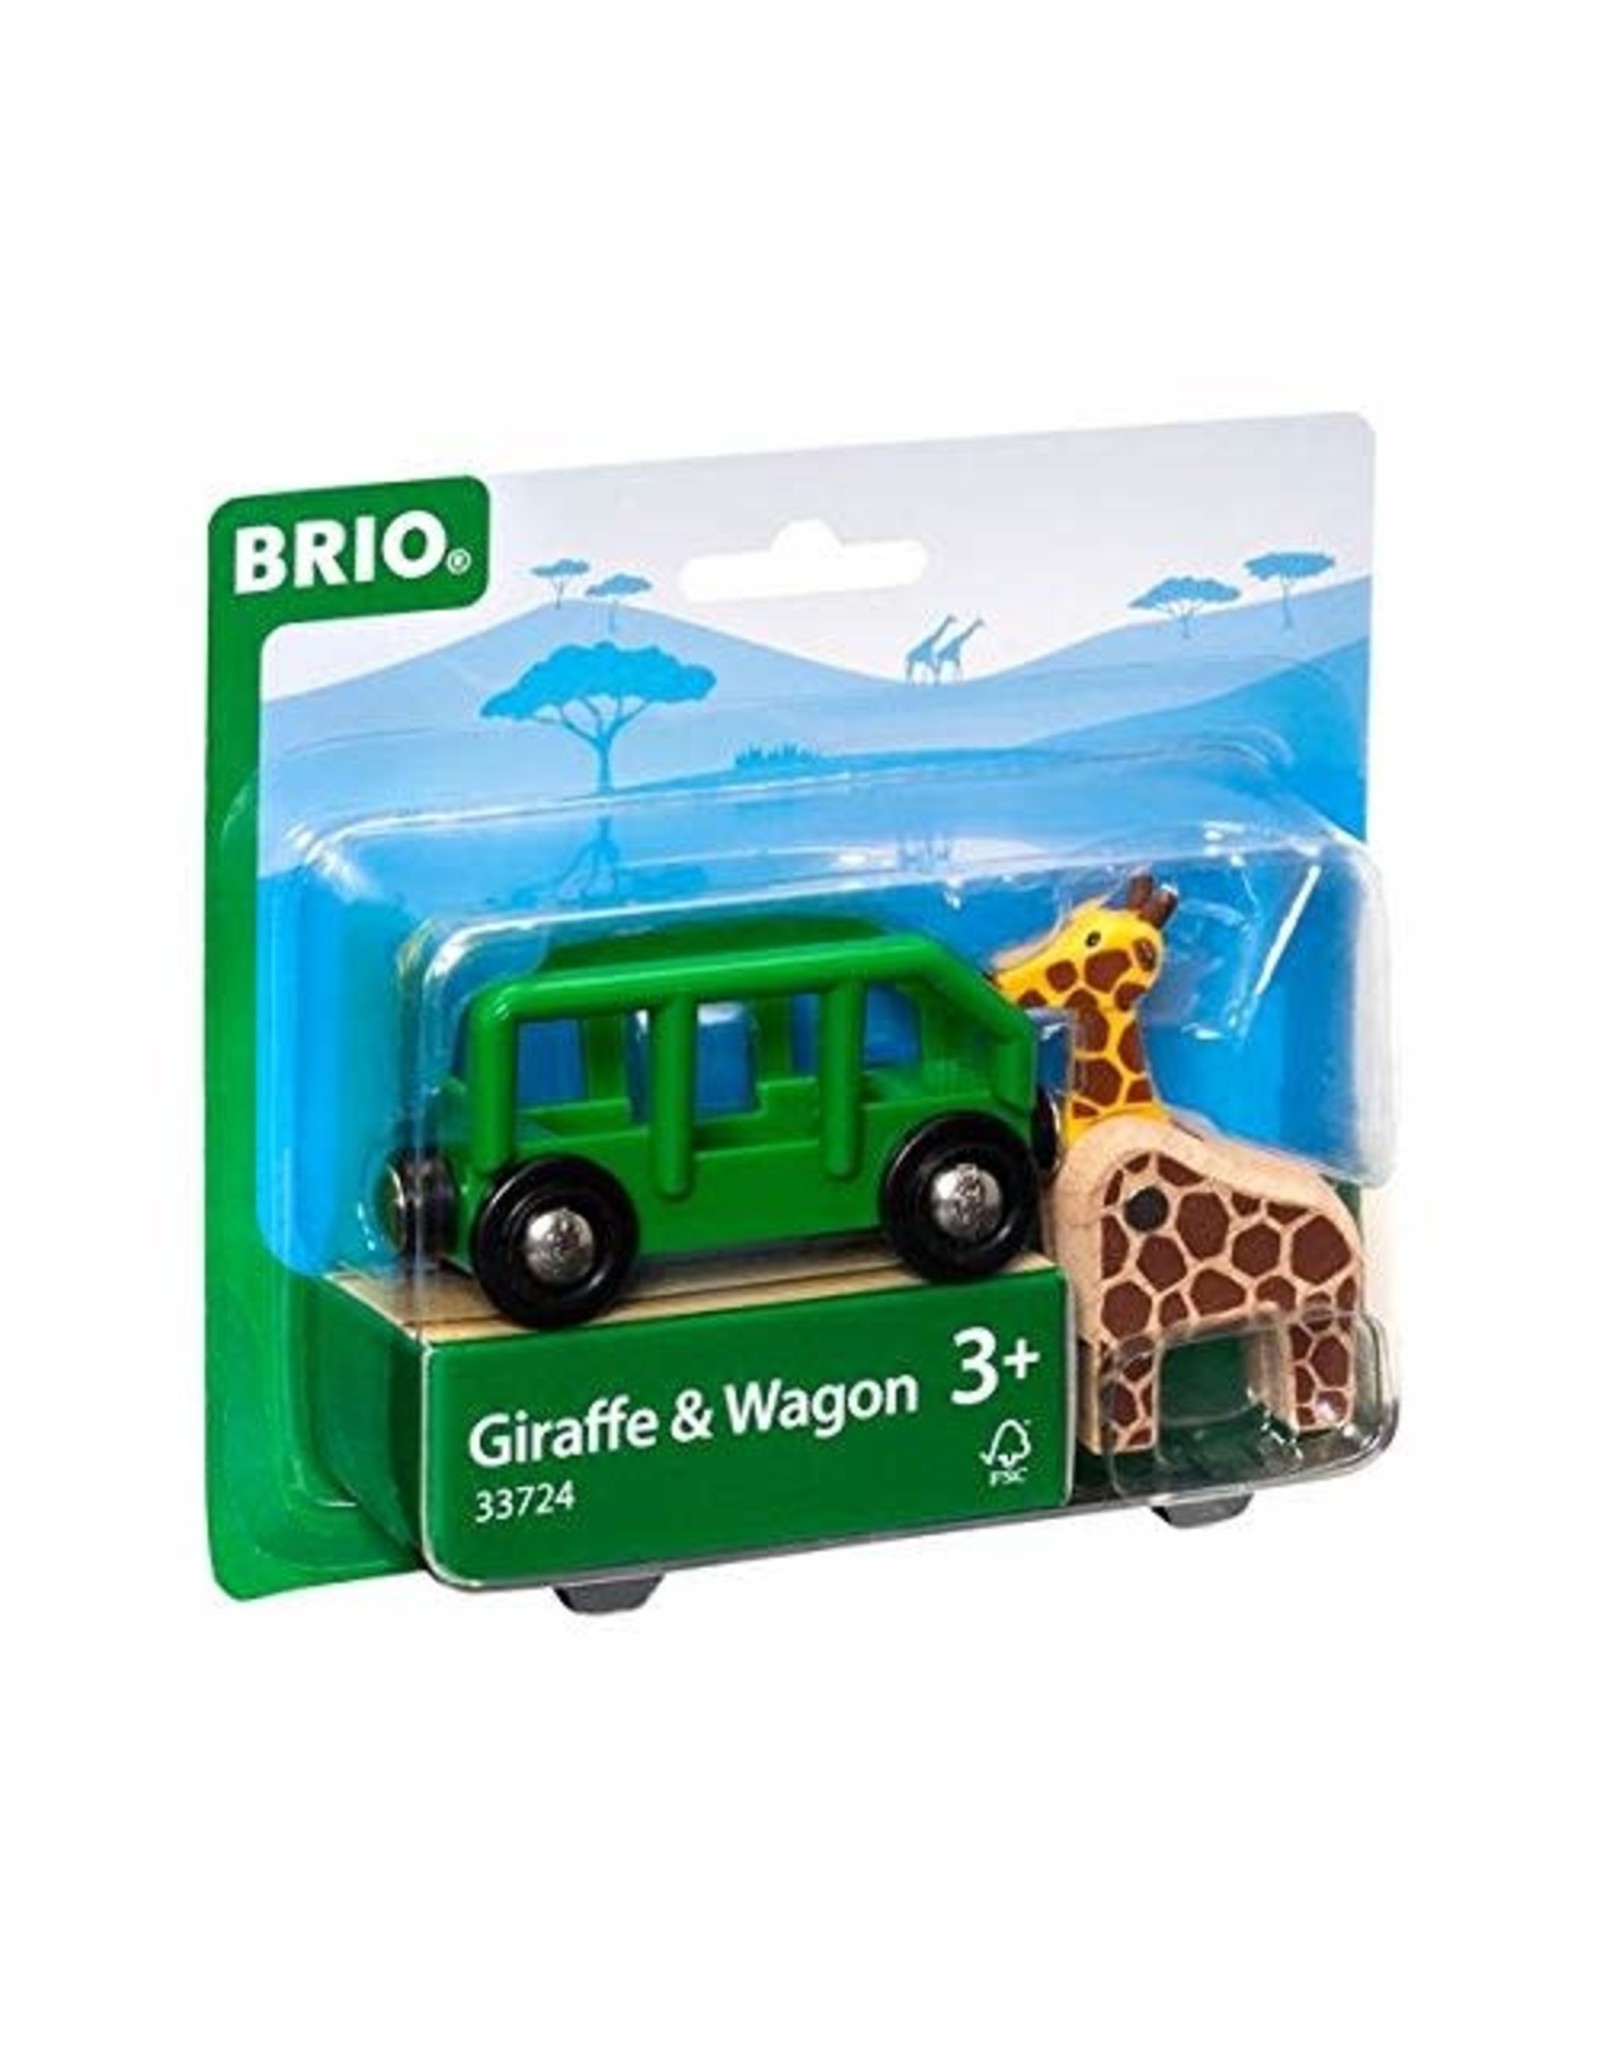 Brio BRIO Giraffe and Wagon